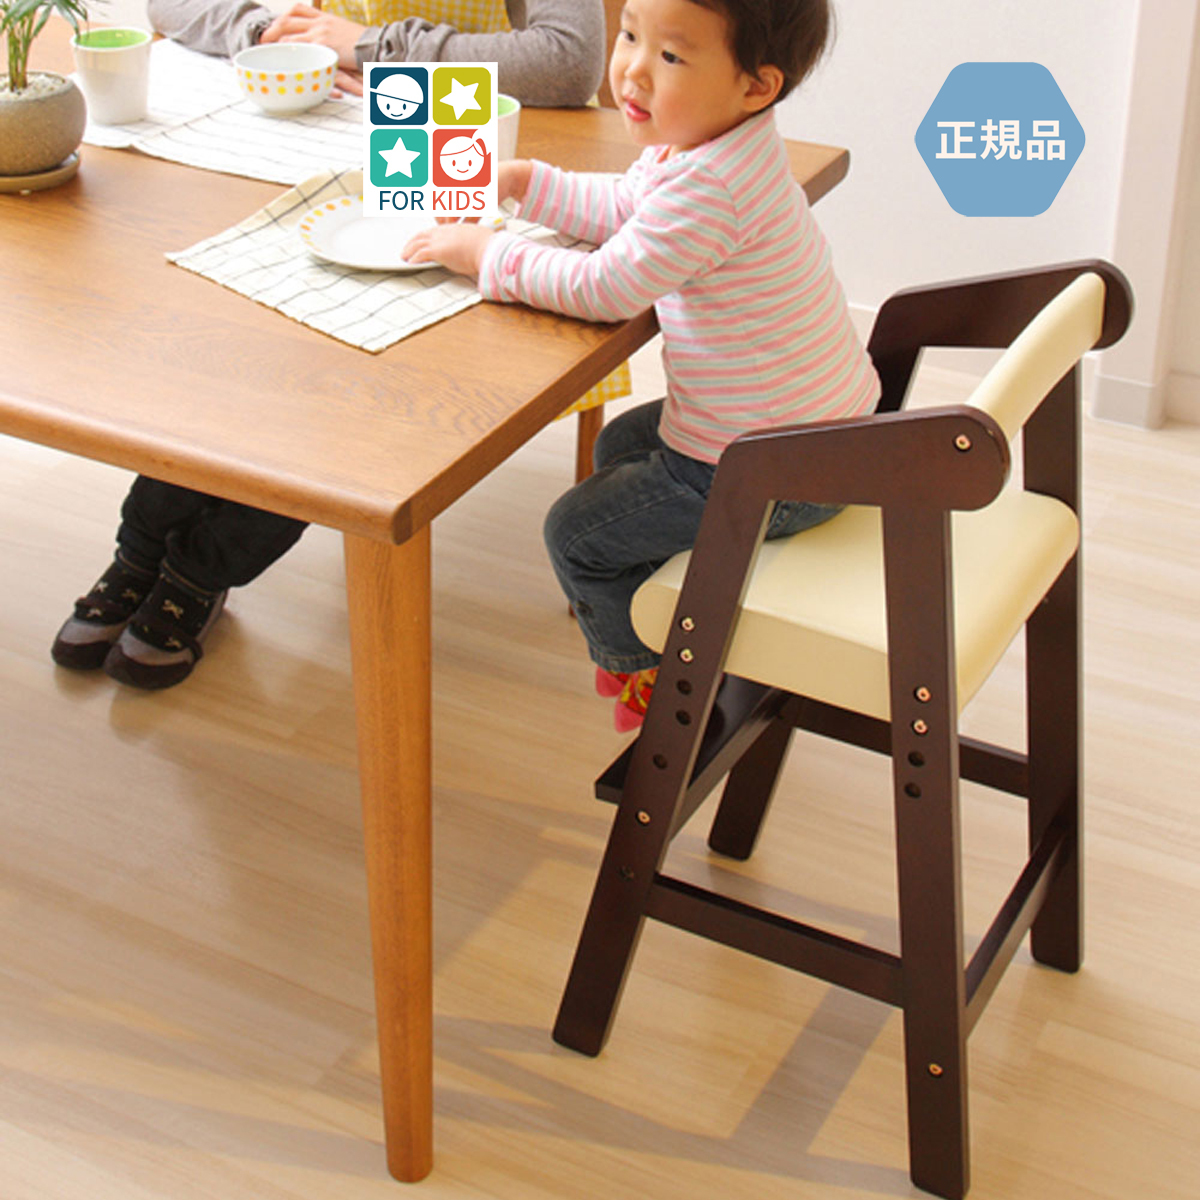 Chaise de bébé, chaise pour enfants, chaise pour enfants, type élevé, en bois, marron foncé, KDC-2442DBR, Articles faits à la main, meubles, Chaise, Chaise, chaise